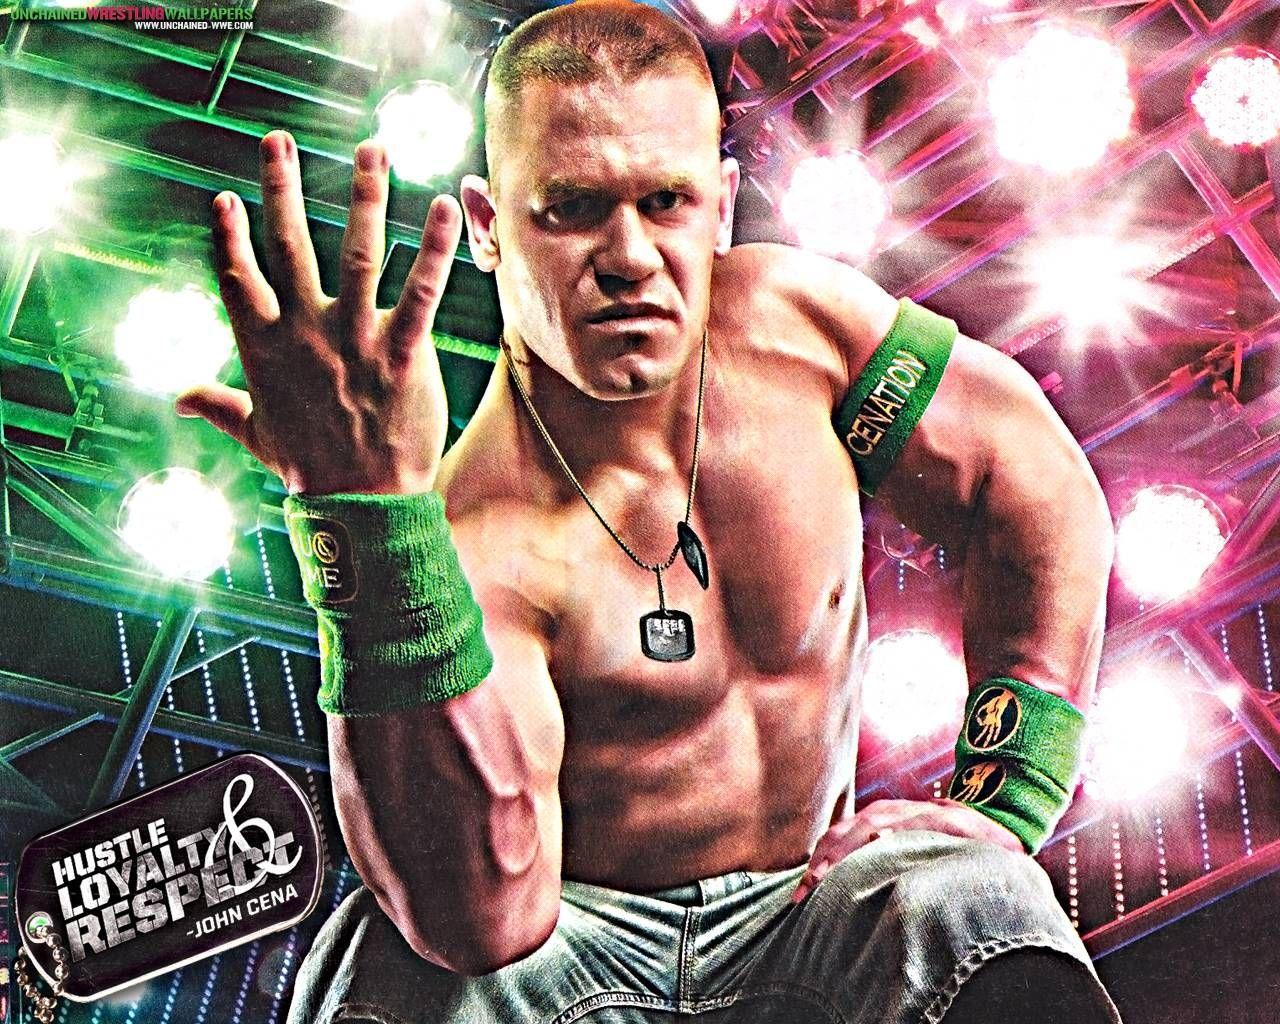 John Cena Wallpaper Free Download 1000×625 Wwe John Cena Image